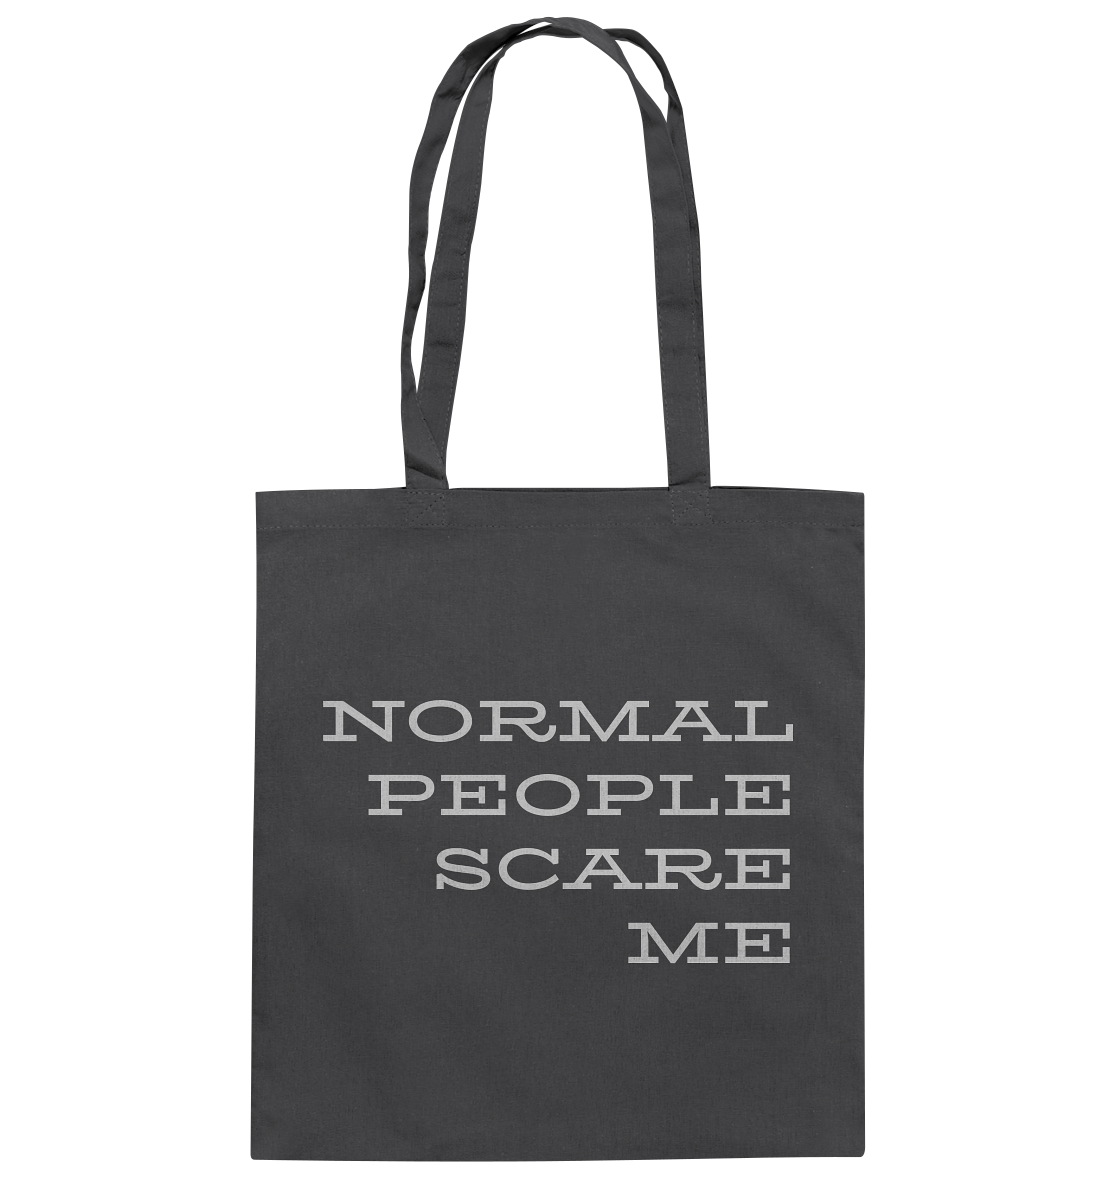 Stoffbeutel mit langen Henkeln, Aufdruck "Normal people scare me", grau